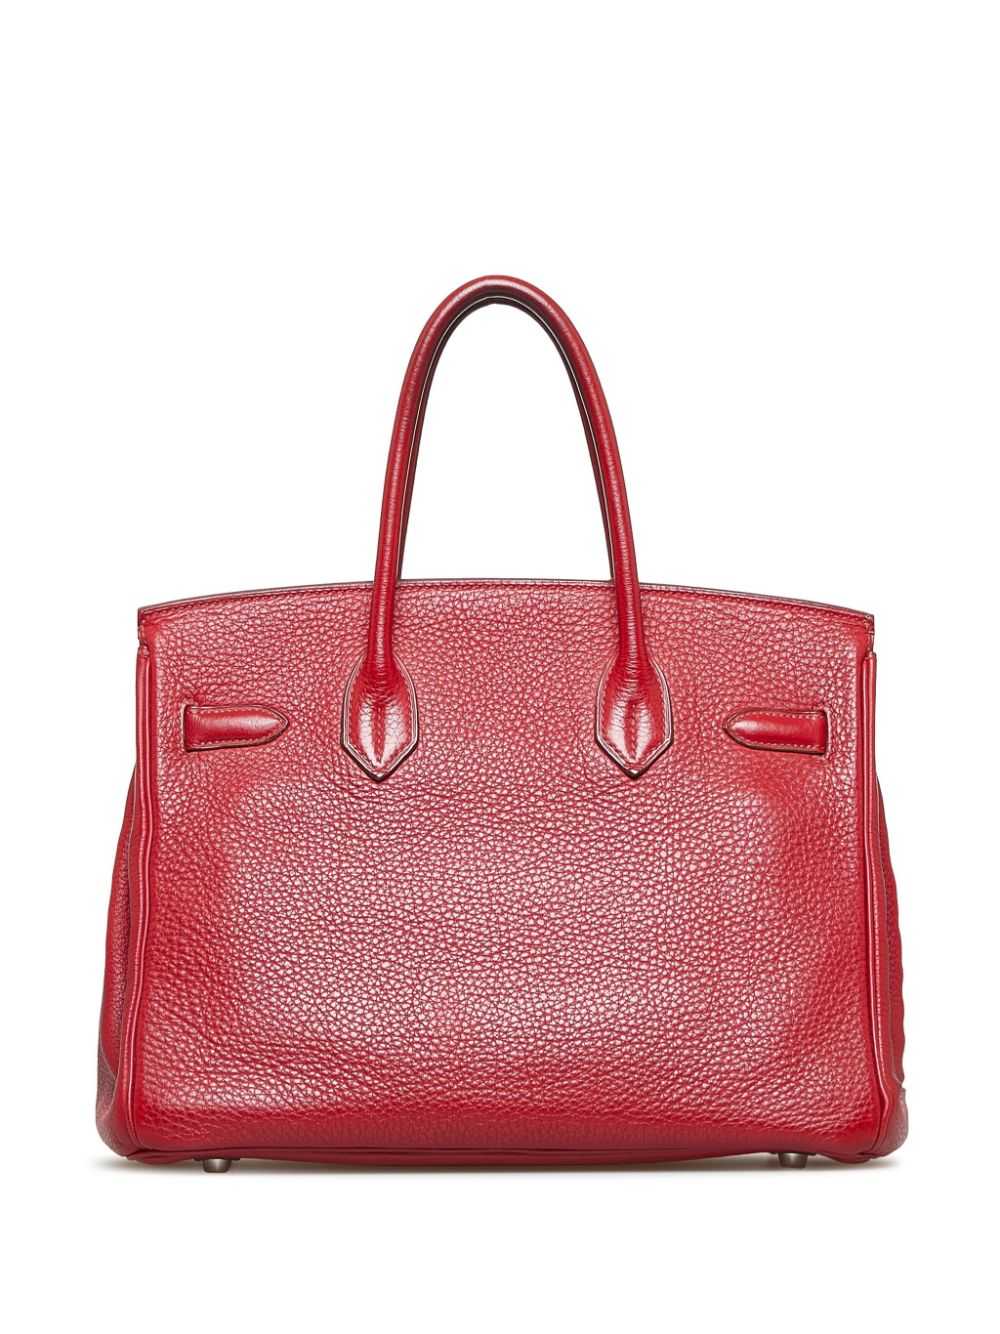 Hermès Pre-Owned pre-owned Birkin 30 handbag - Red - image 2